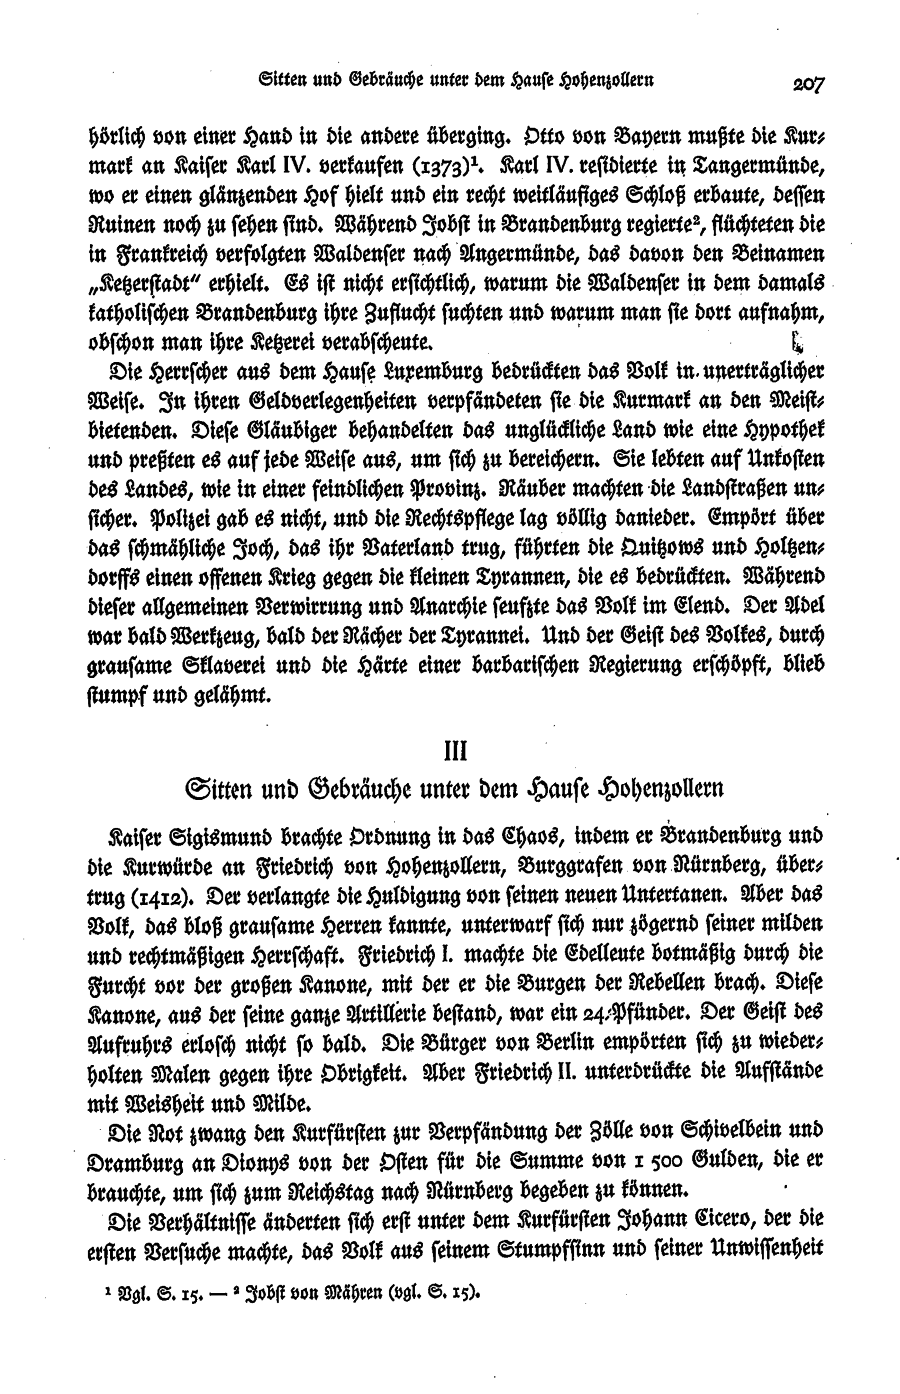 S. 207, Obj. 2